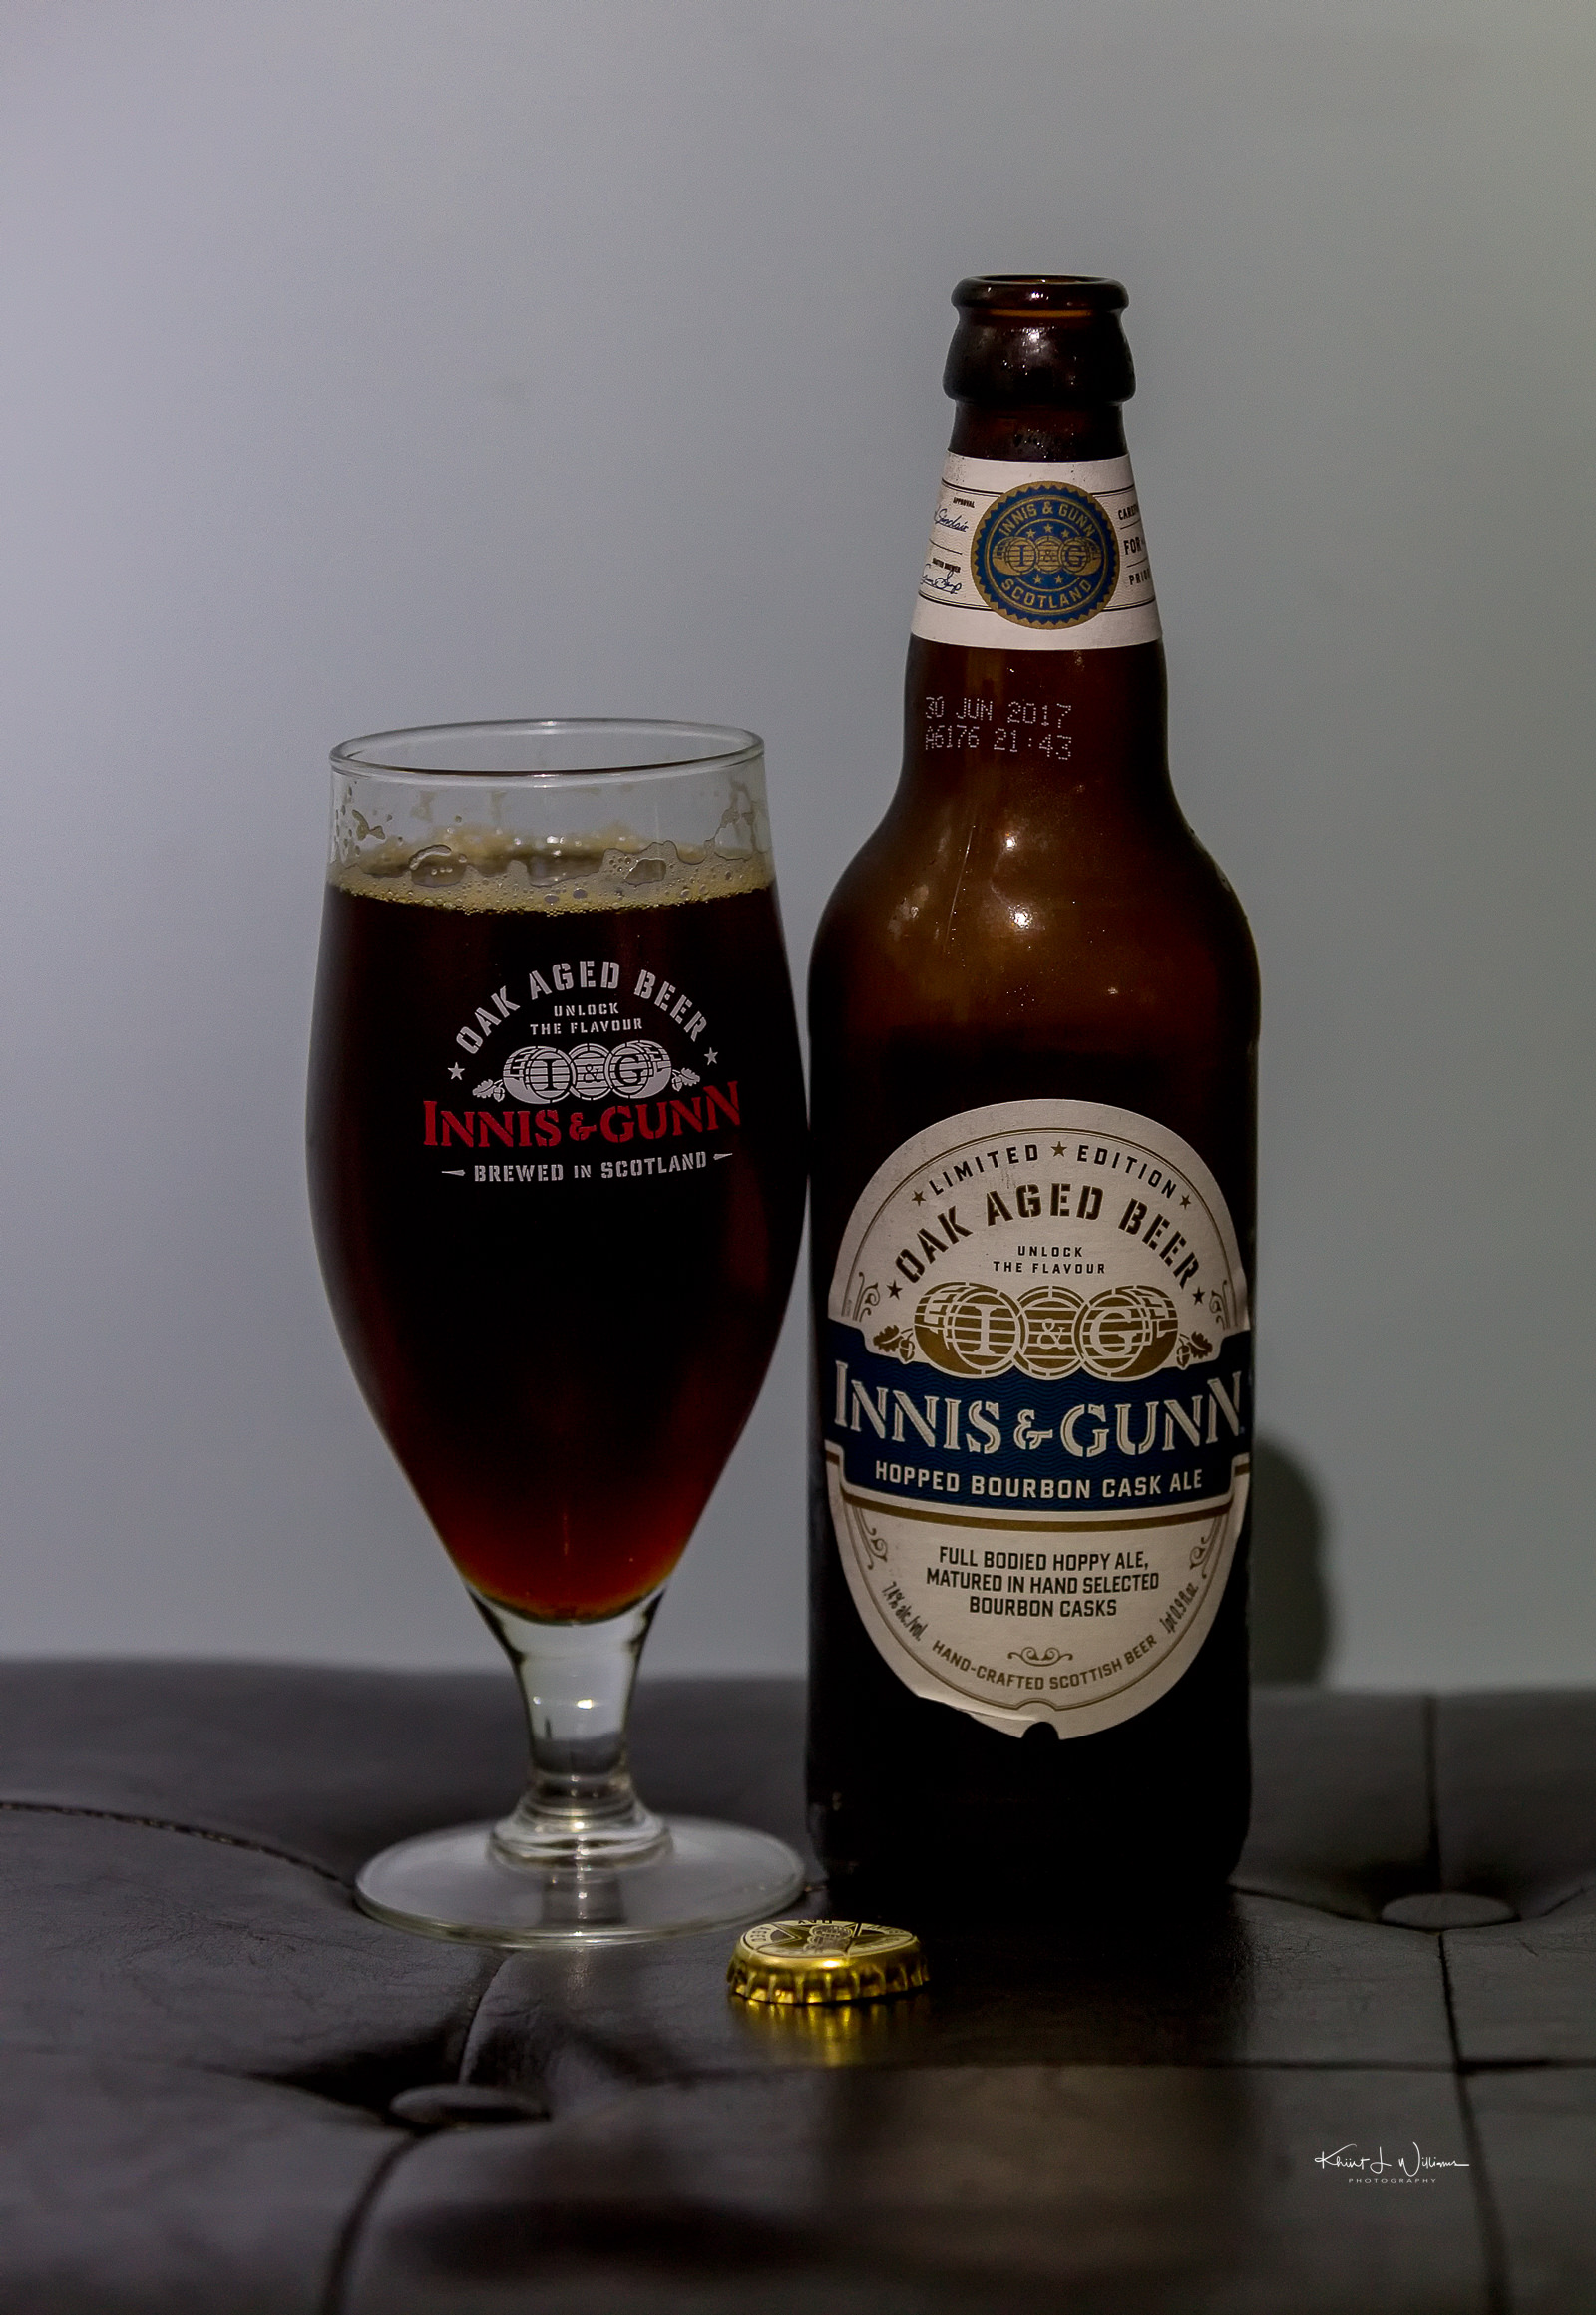 Innis & Gunn's Hopped Bourbon Cask Ale